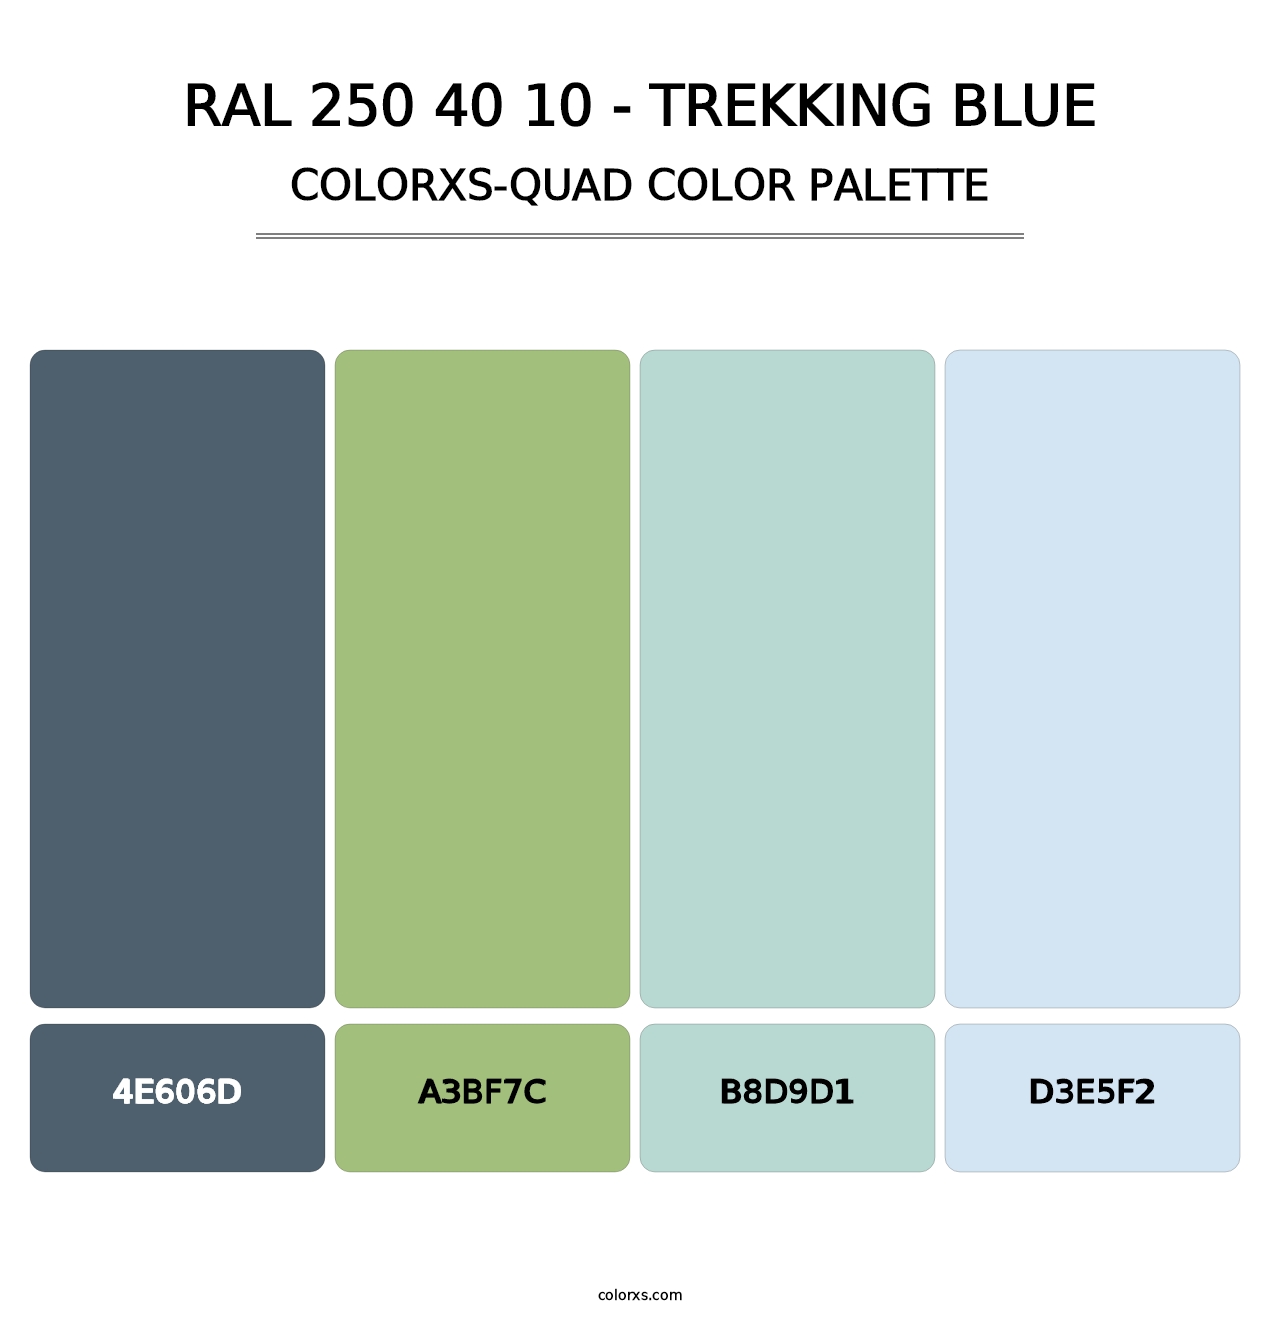 RAL 250 40 10 - Trekking Blue - Colorxs Quad Palette